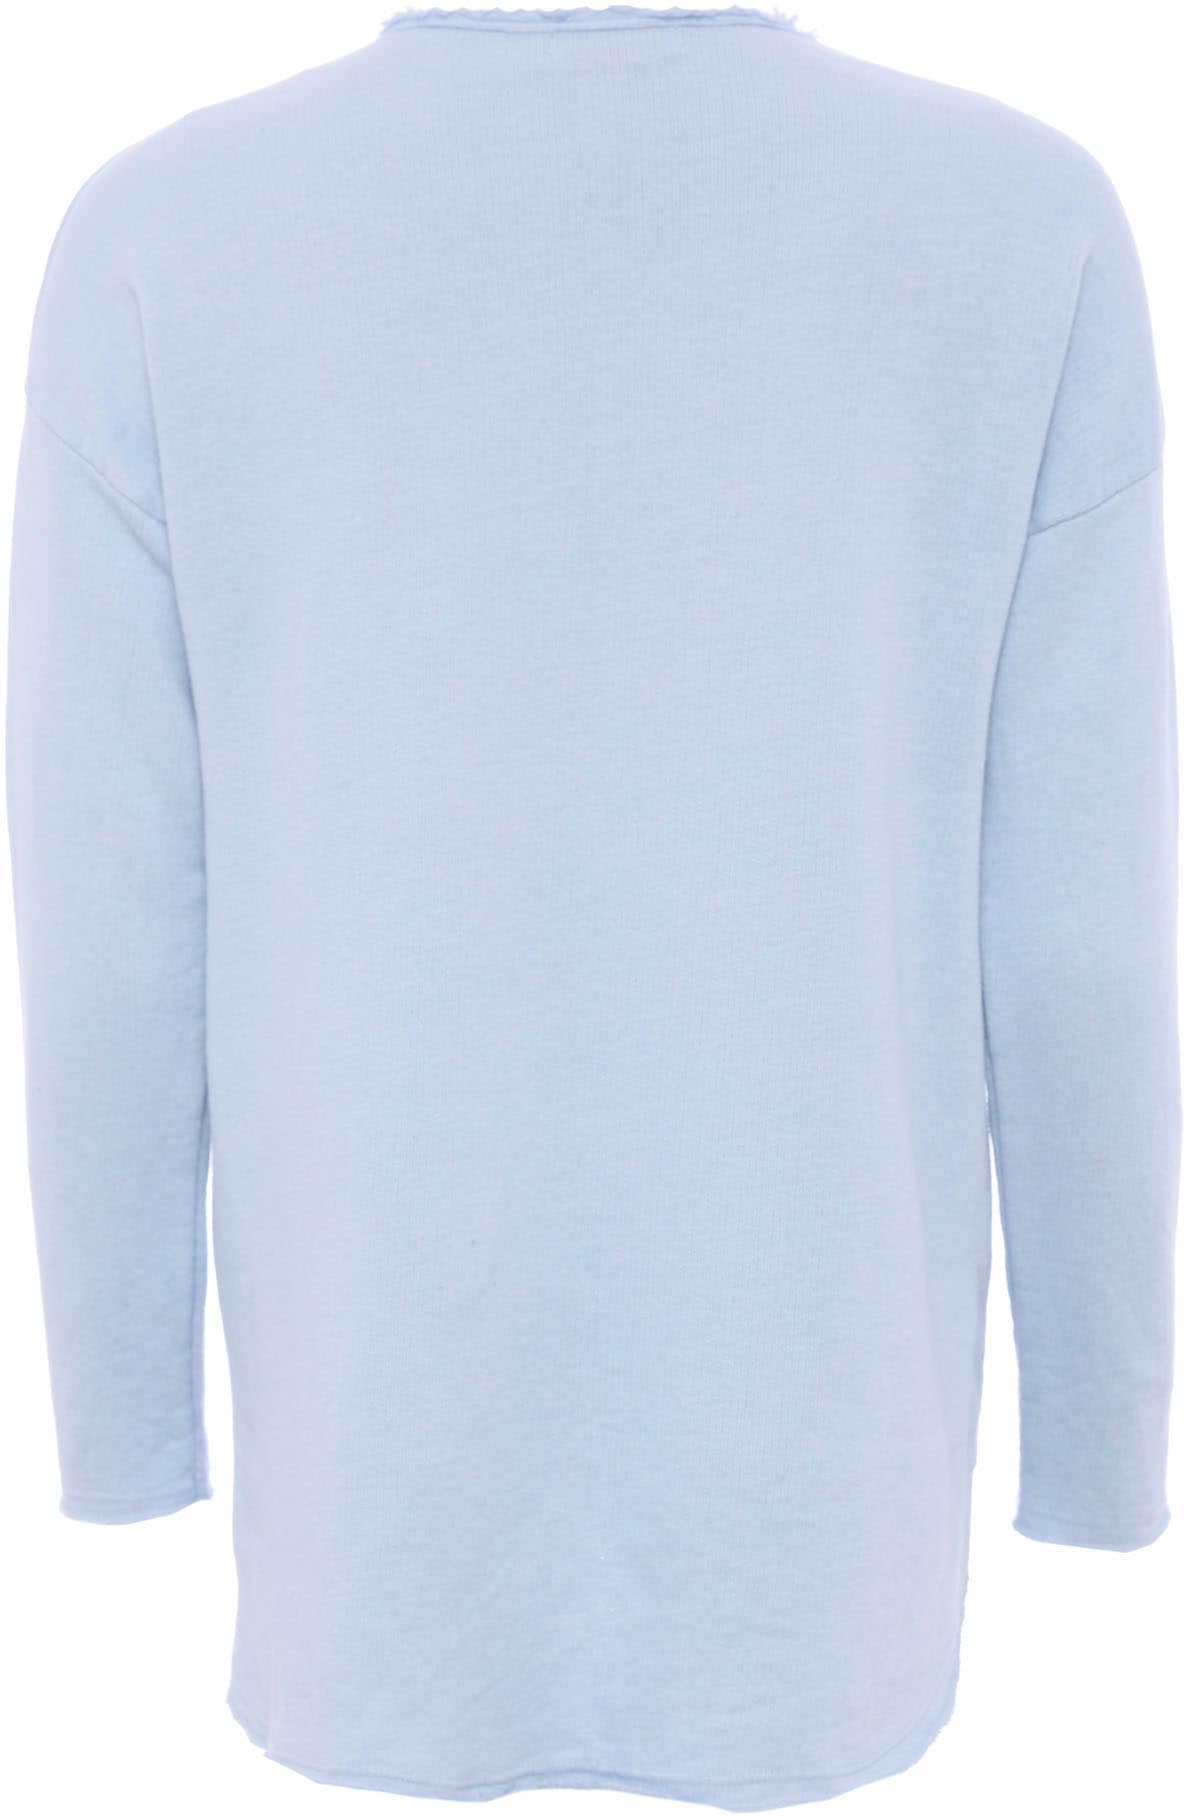 Zwillingsherz Sweatshirt, V-Ausschnitt im Used-Look leicht ausgefranst